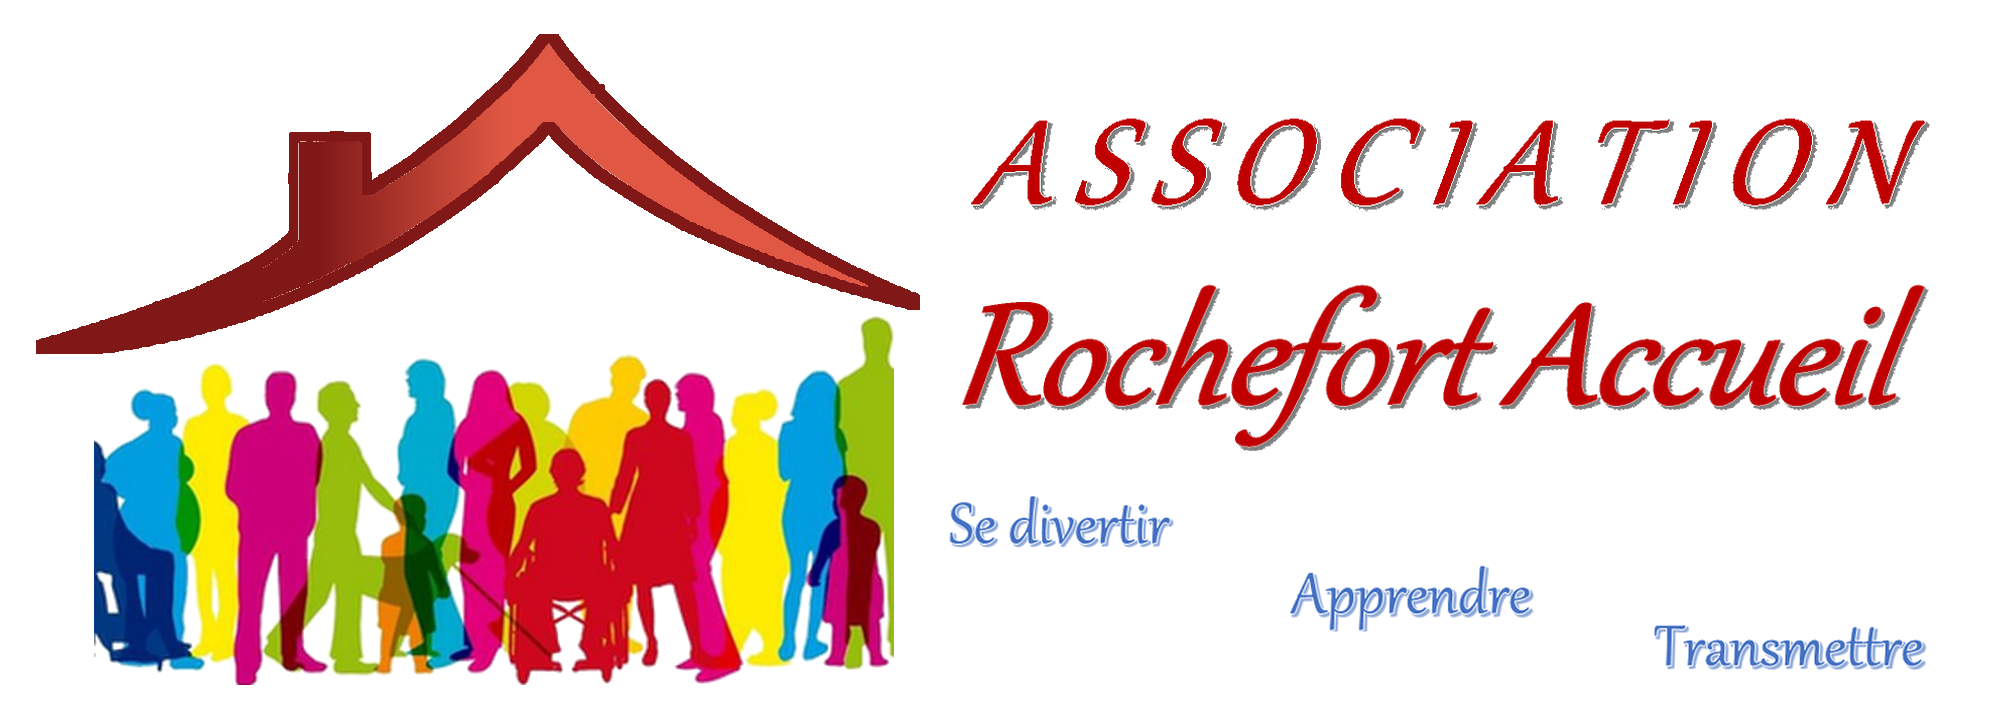 Association Rochefort Accueil